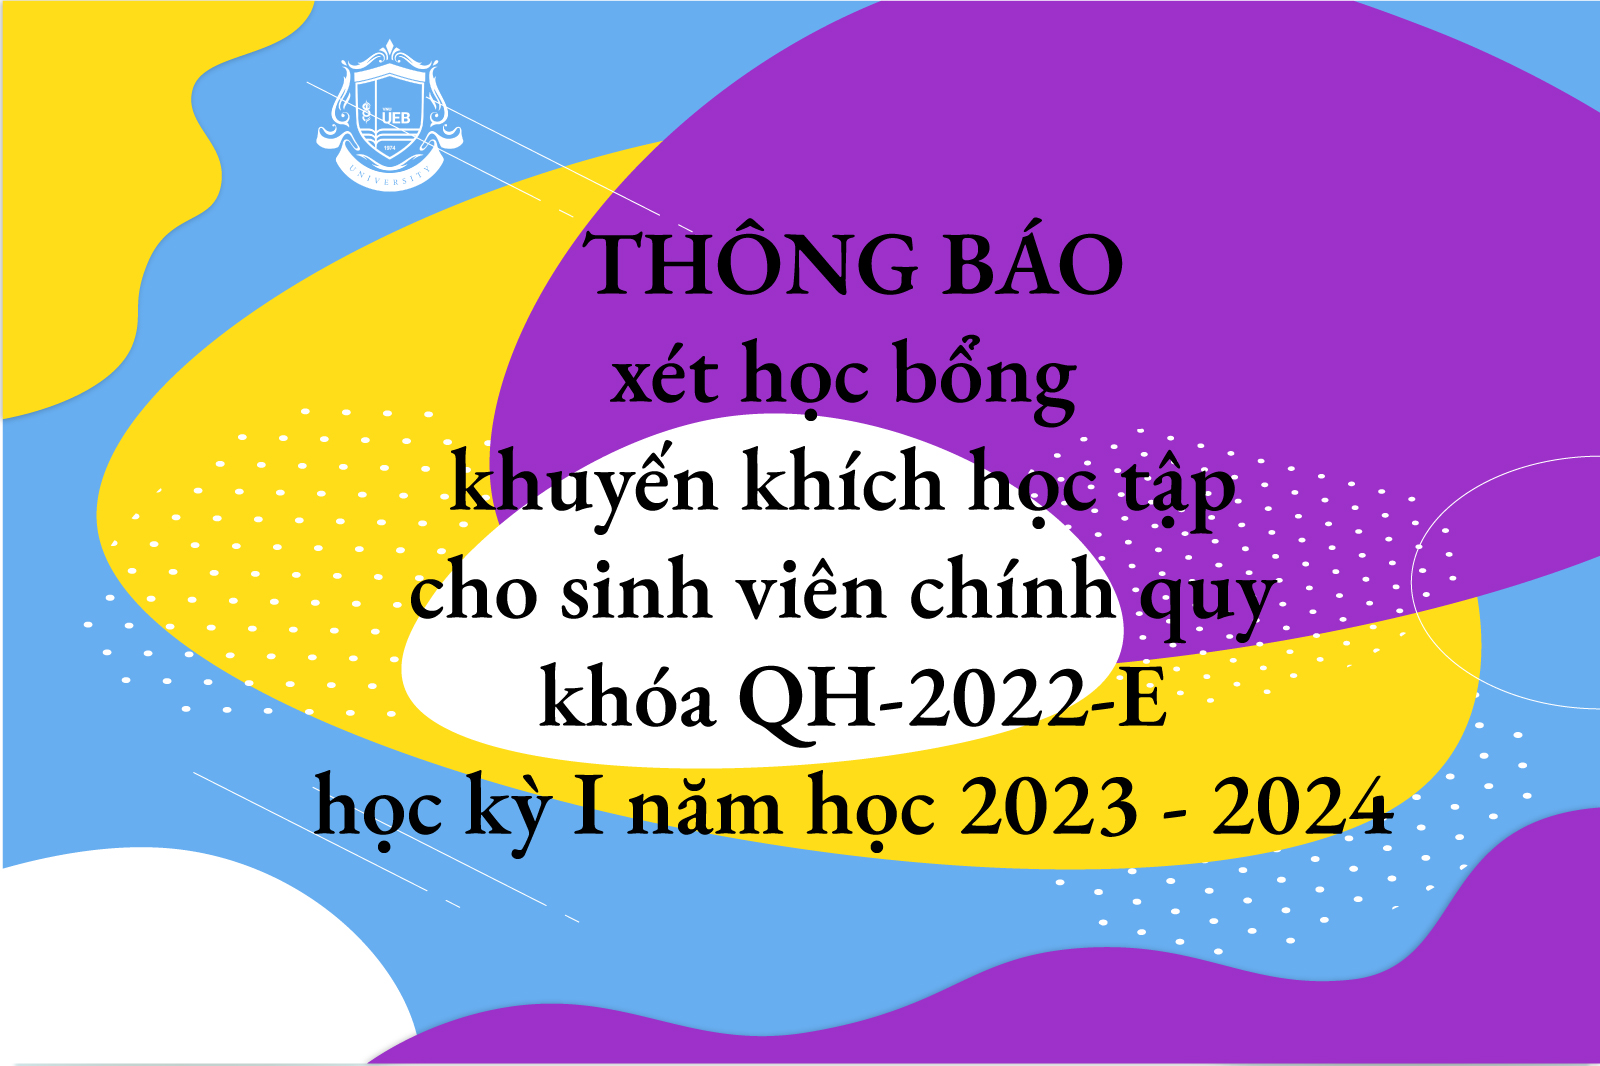 Thông báo xét học bổng khuyến khích học tập cho sinh viên chính quy khóa QH-2022-E học kỳ I năm học 2023 - 2024